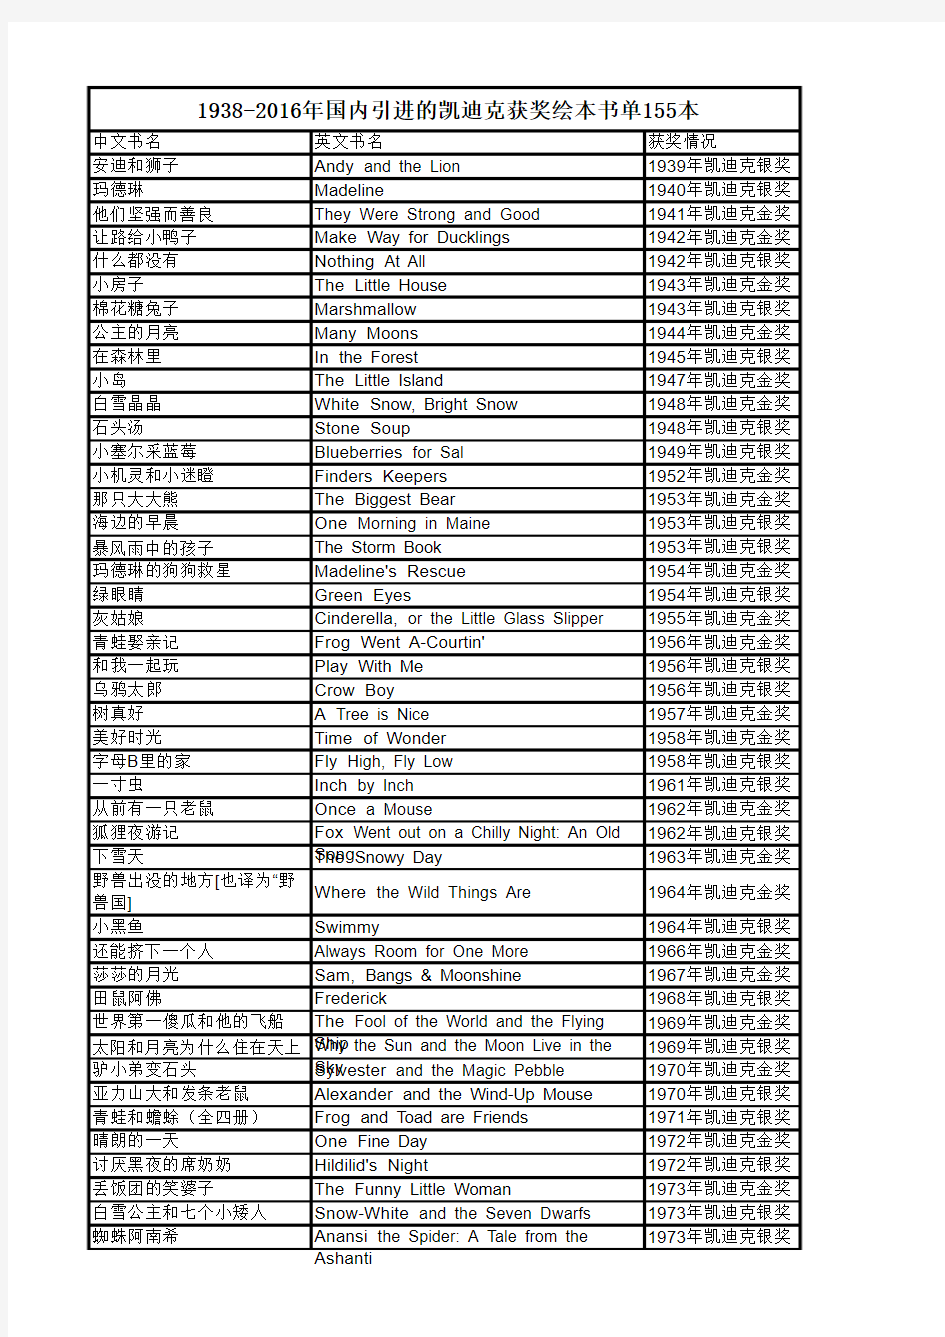 【原创】凯迪克获奖绘本目录清单155本(1938-2016年)